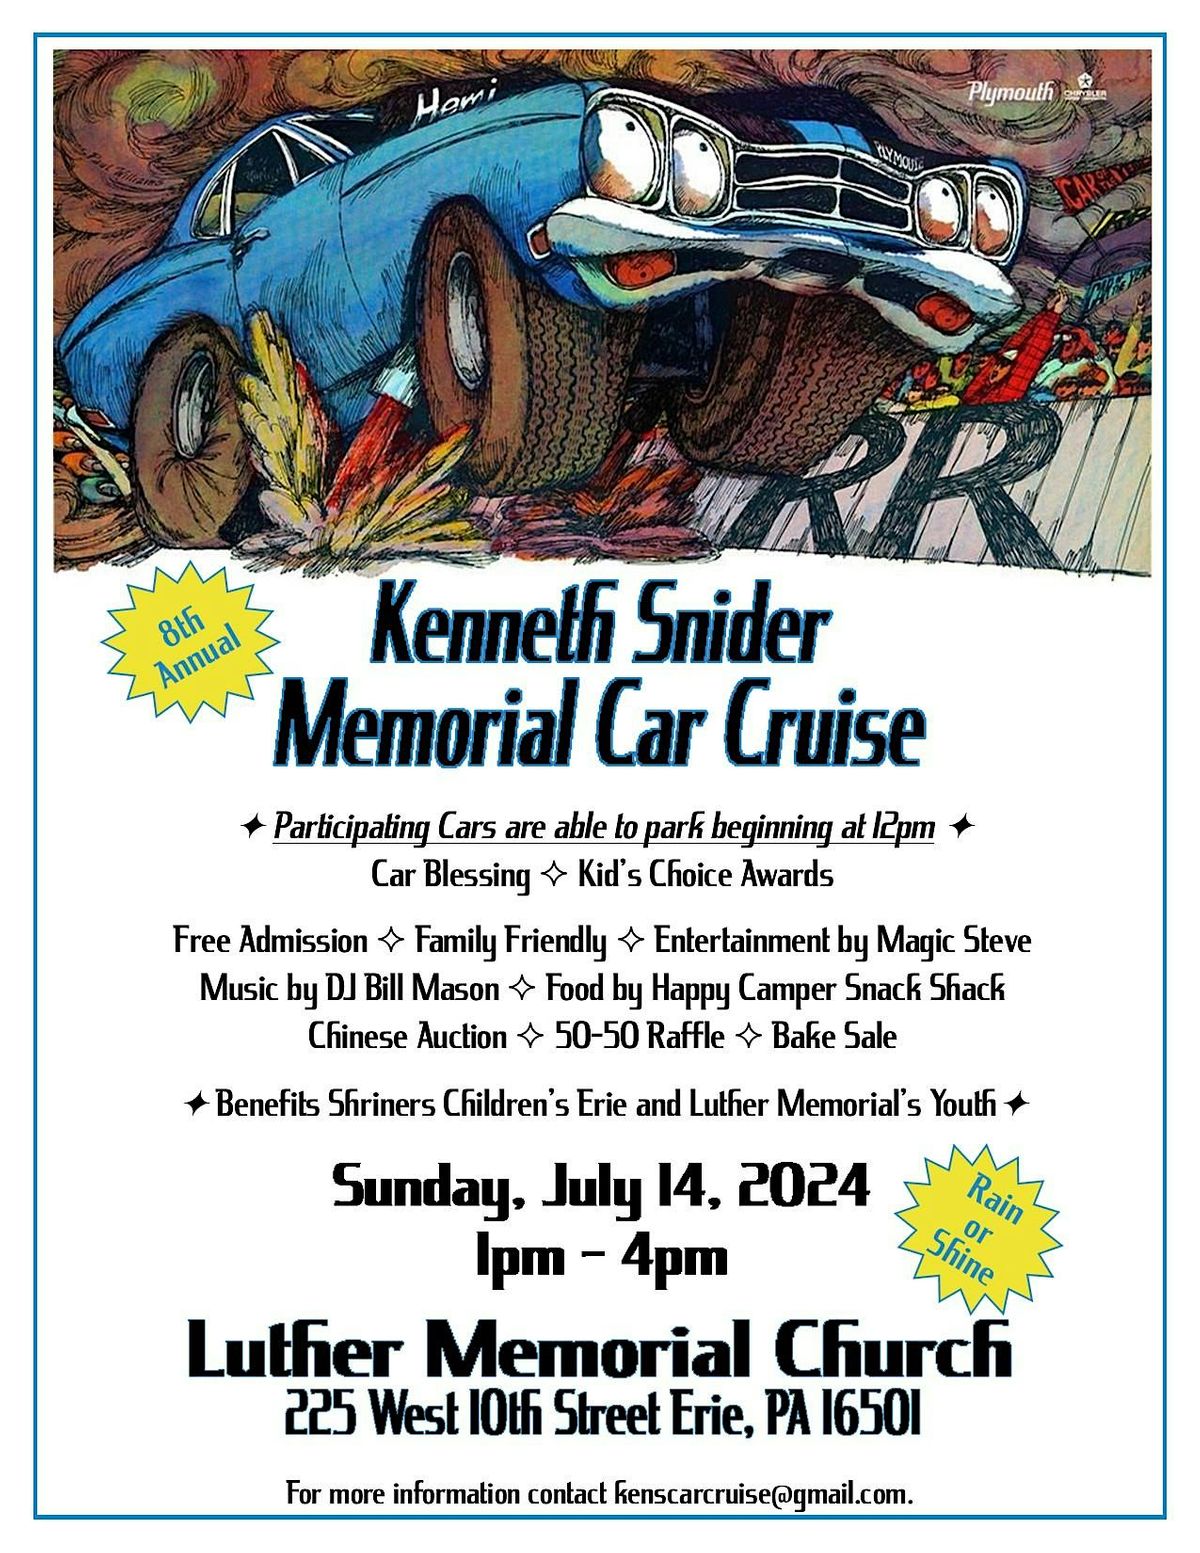 8th Annual Kenneth Snider Memorial Car Cruise